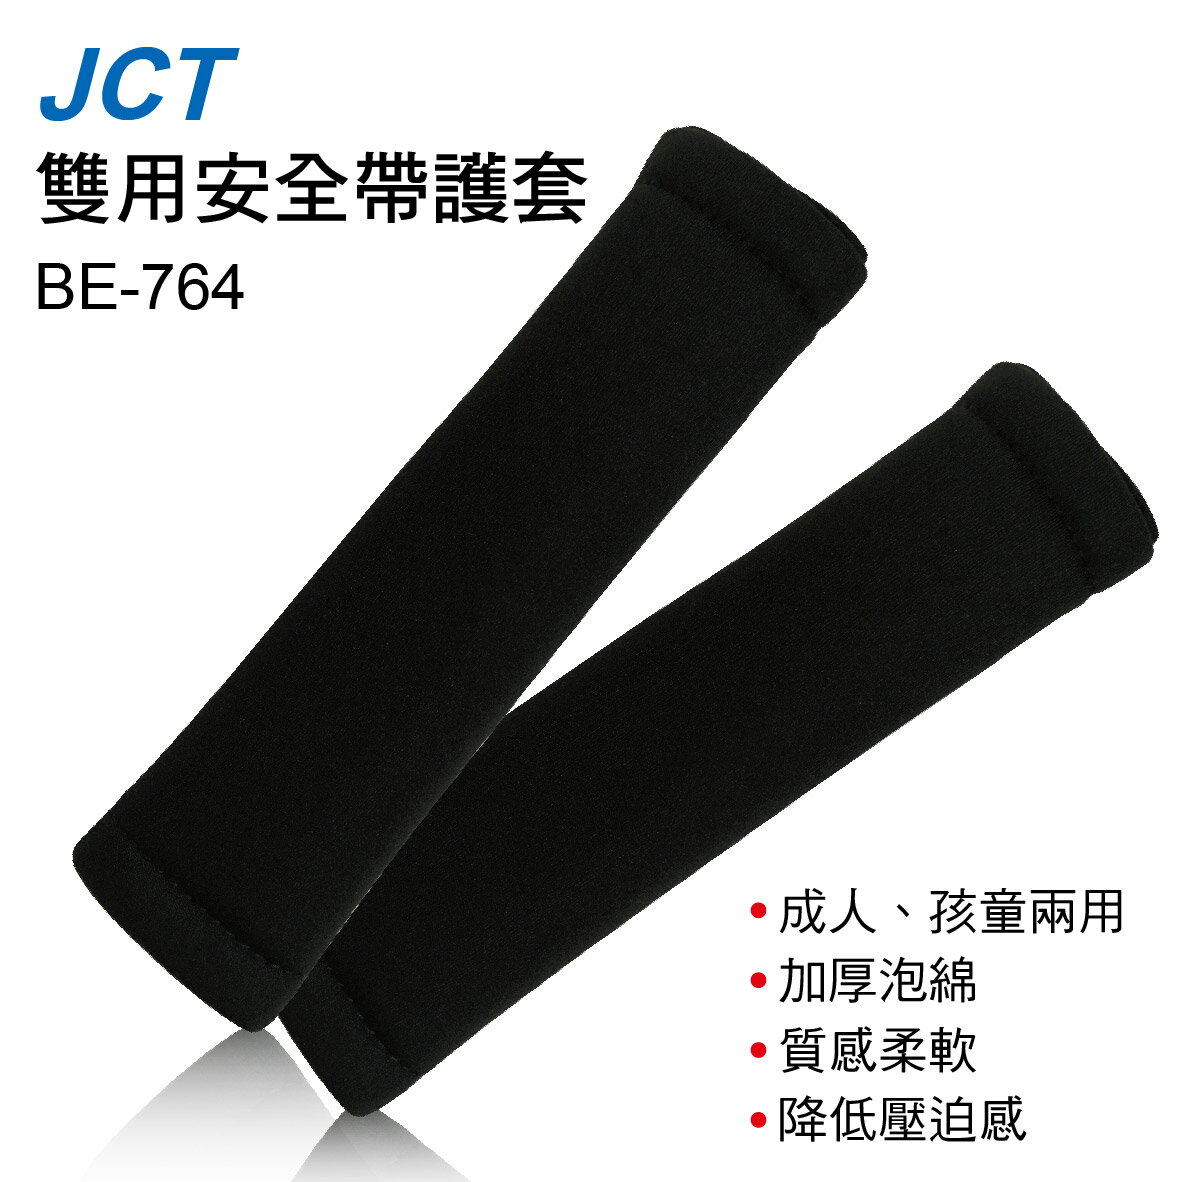 真便宜 JCT BE-764 雙用安全帶護套(2入)